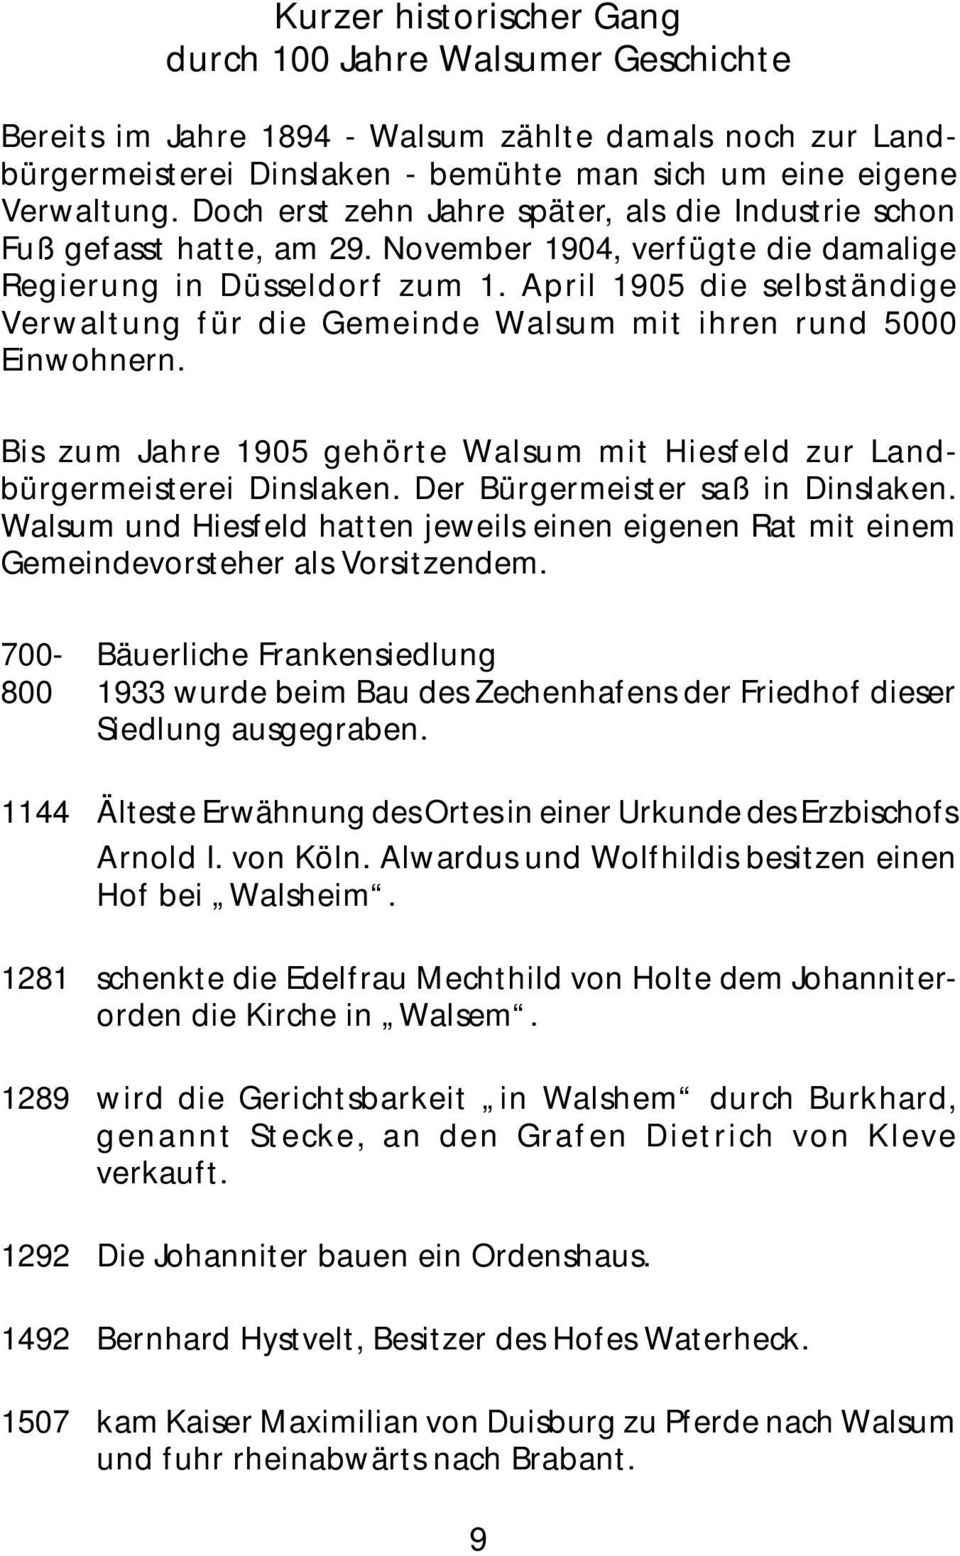 April 1905 die selbständige Verwaltung für die Gemeinde Walsum mit ihren rund 5000 Einwohnern. Bis zum Jahre 1905 gehörte Walsum mit Hiesfeld zur Landbürgermeisterei Dinslaken.